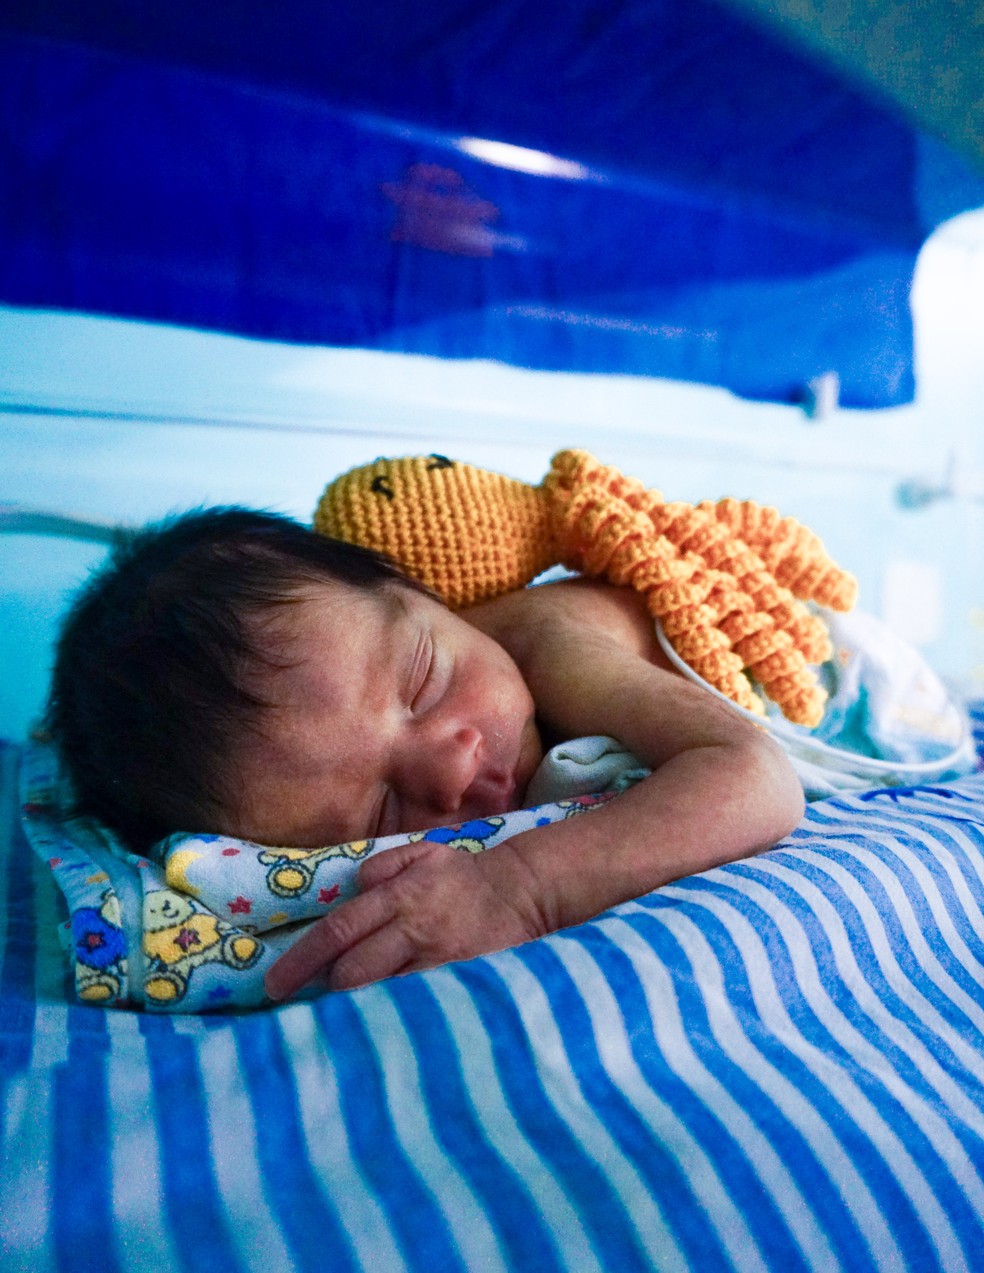 Moluscos fazem companhia para bebês prematuros nas incubadoras — Foto: divulgação/Jonathan Alves